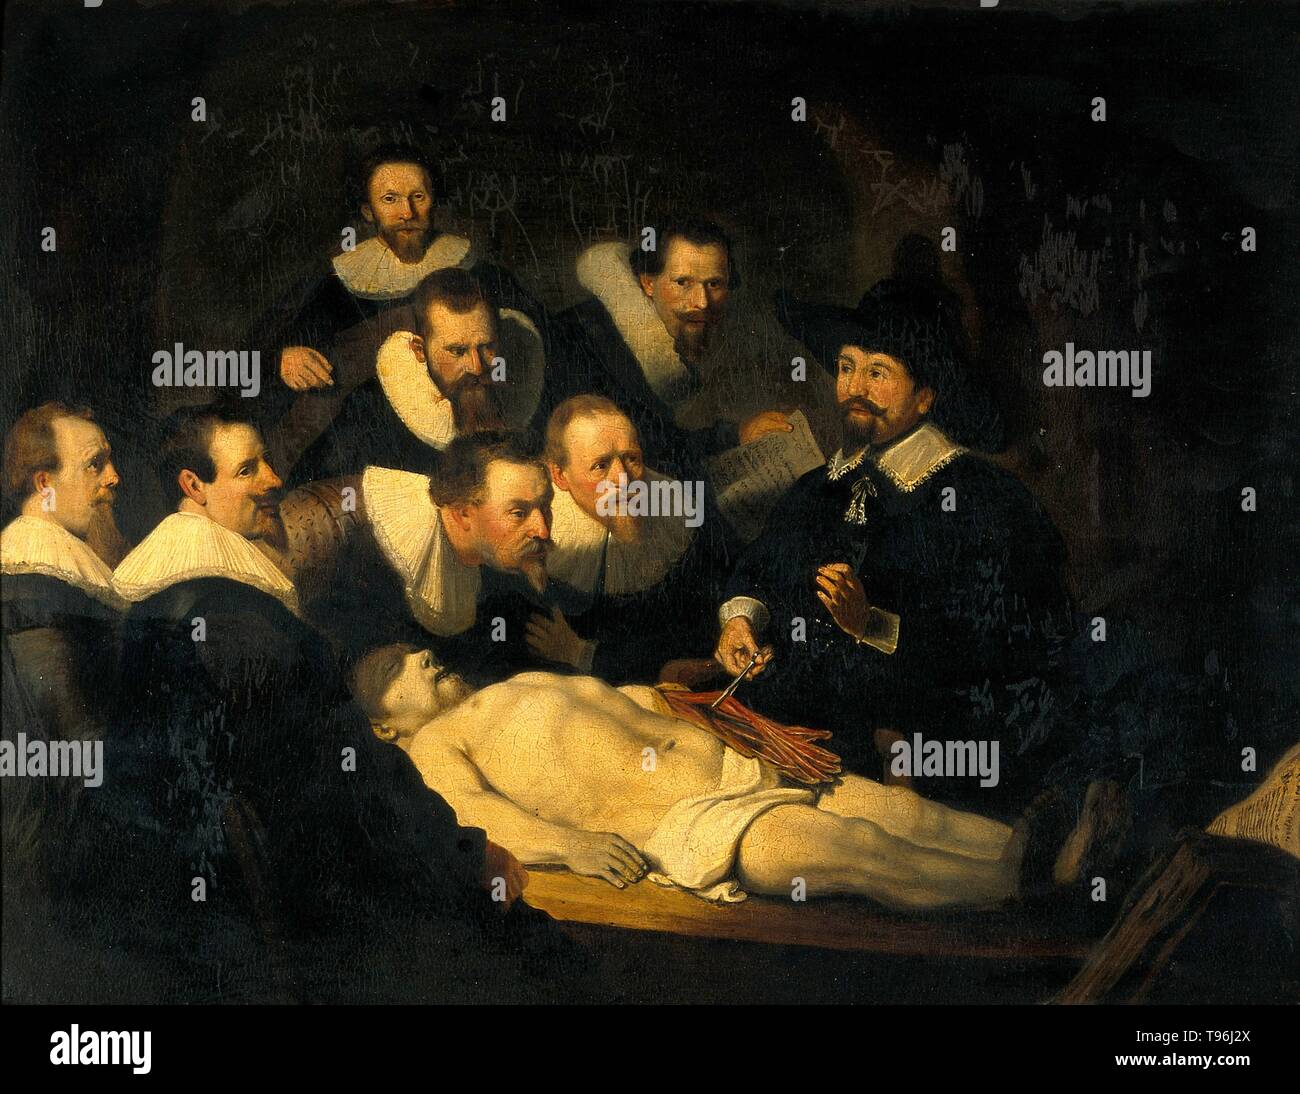 Intitulé : "La leçon d'Anatomie du Dr Nicolaes Tulp' reproduction de peinture de Rembrandt van Rijn. Dissection humaine est couramment pratiqué dans l'enseignement de l'anatomie pour les étudiants de médecine. Pas de l'interdiction universelle de dissection ou d'autopsie n'a été exercé au Moyen Âge. Certains pays européens ont commencé à légaliser la dissection de criminels exécutés à des fins éducatives dans la fin du 13e et début 14e siècles. La leçon d'Anatomie du Dr Banque D'Images